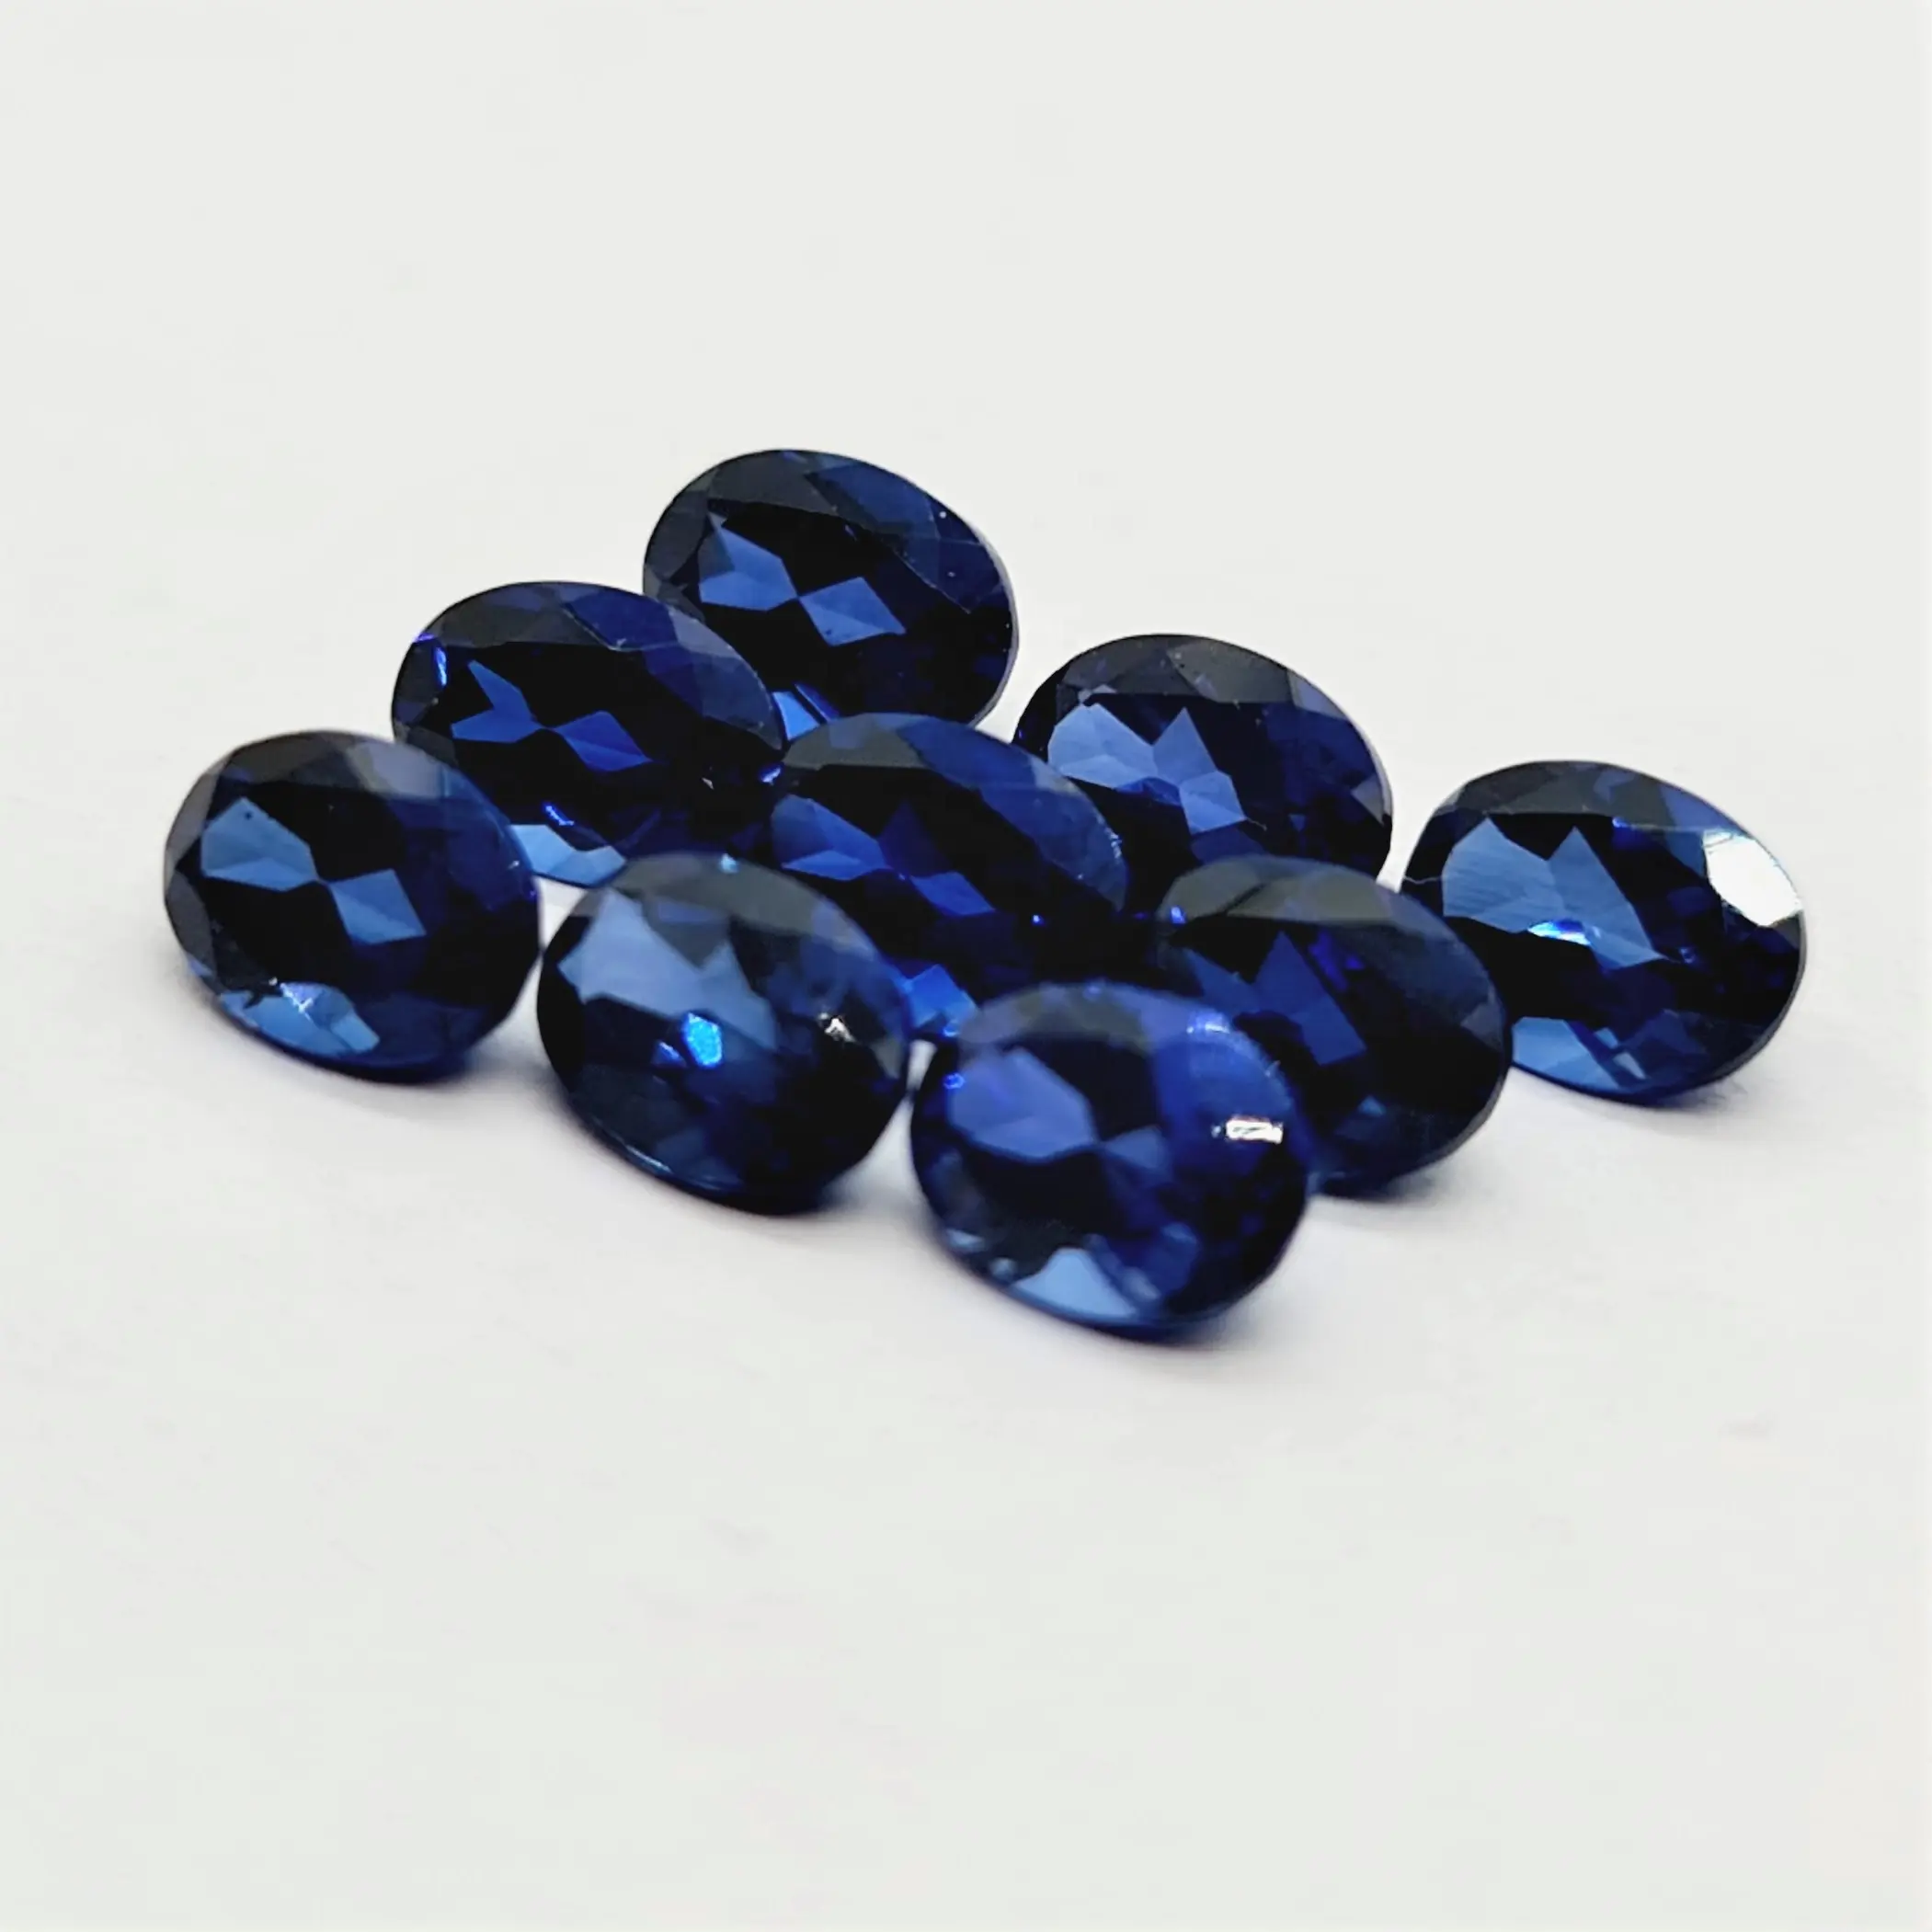 Phòng thí nghiệm cắt hình bầu dục làm bằng đá quý sapphire màu xanh hình bầu dục cắt kích thước hiệu chuẩn và tất cả các hình dạng và kích cỡ cắt theo đơn đặt hàng tùy chỉnh trong bán buôn pr